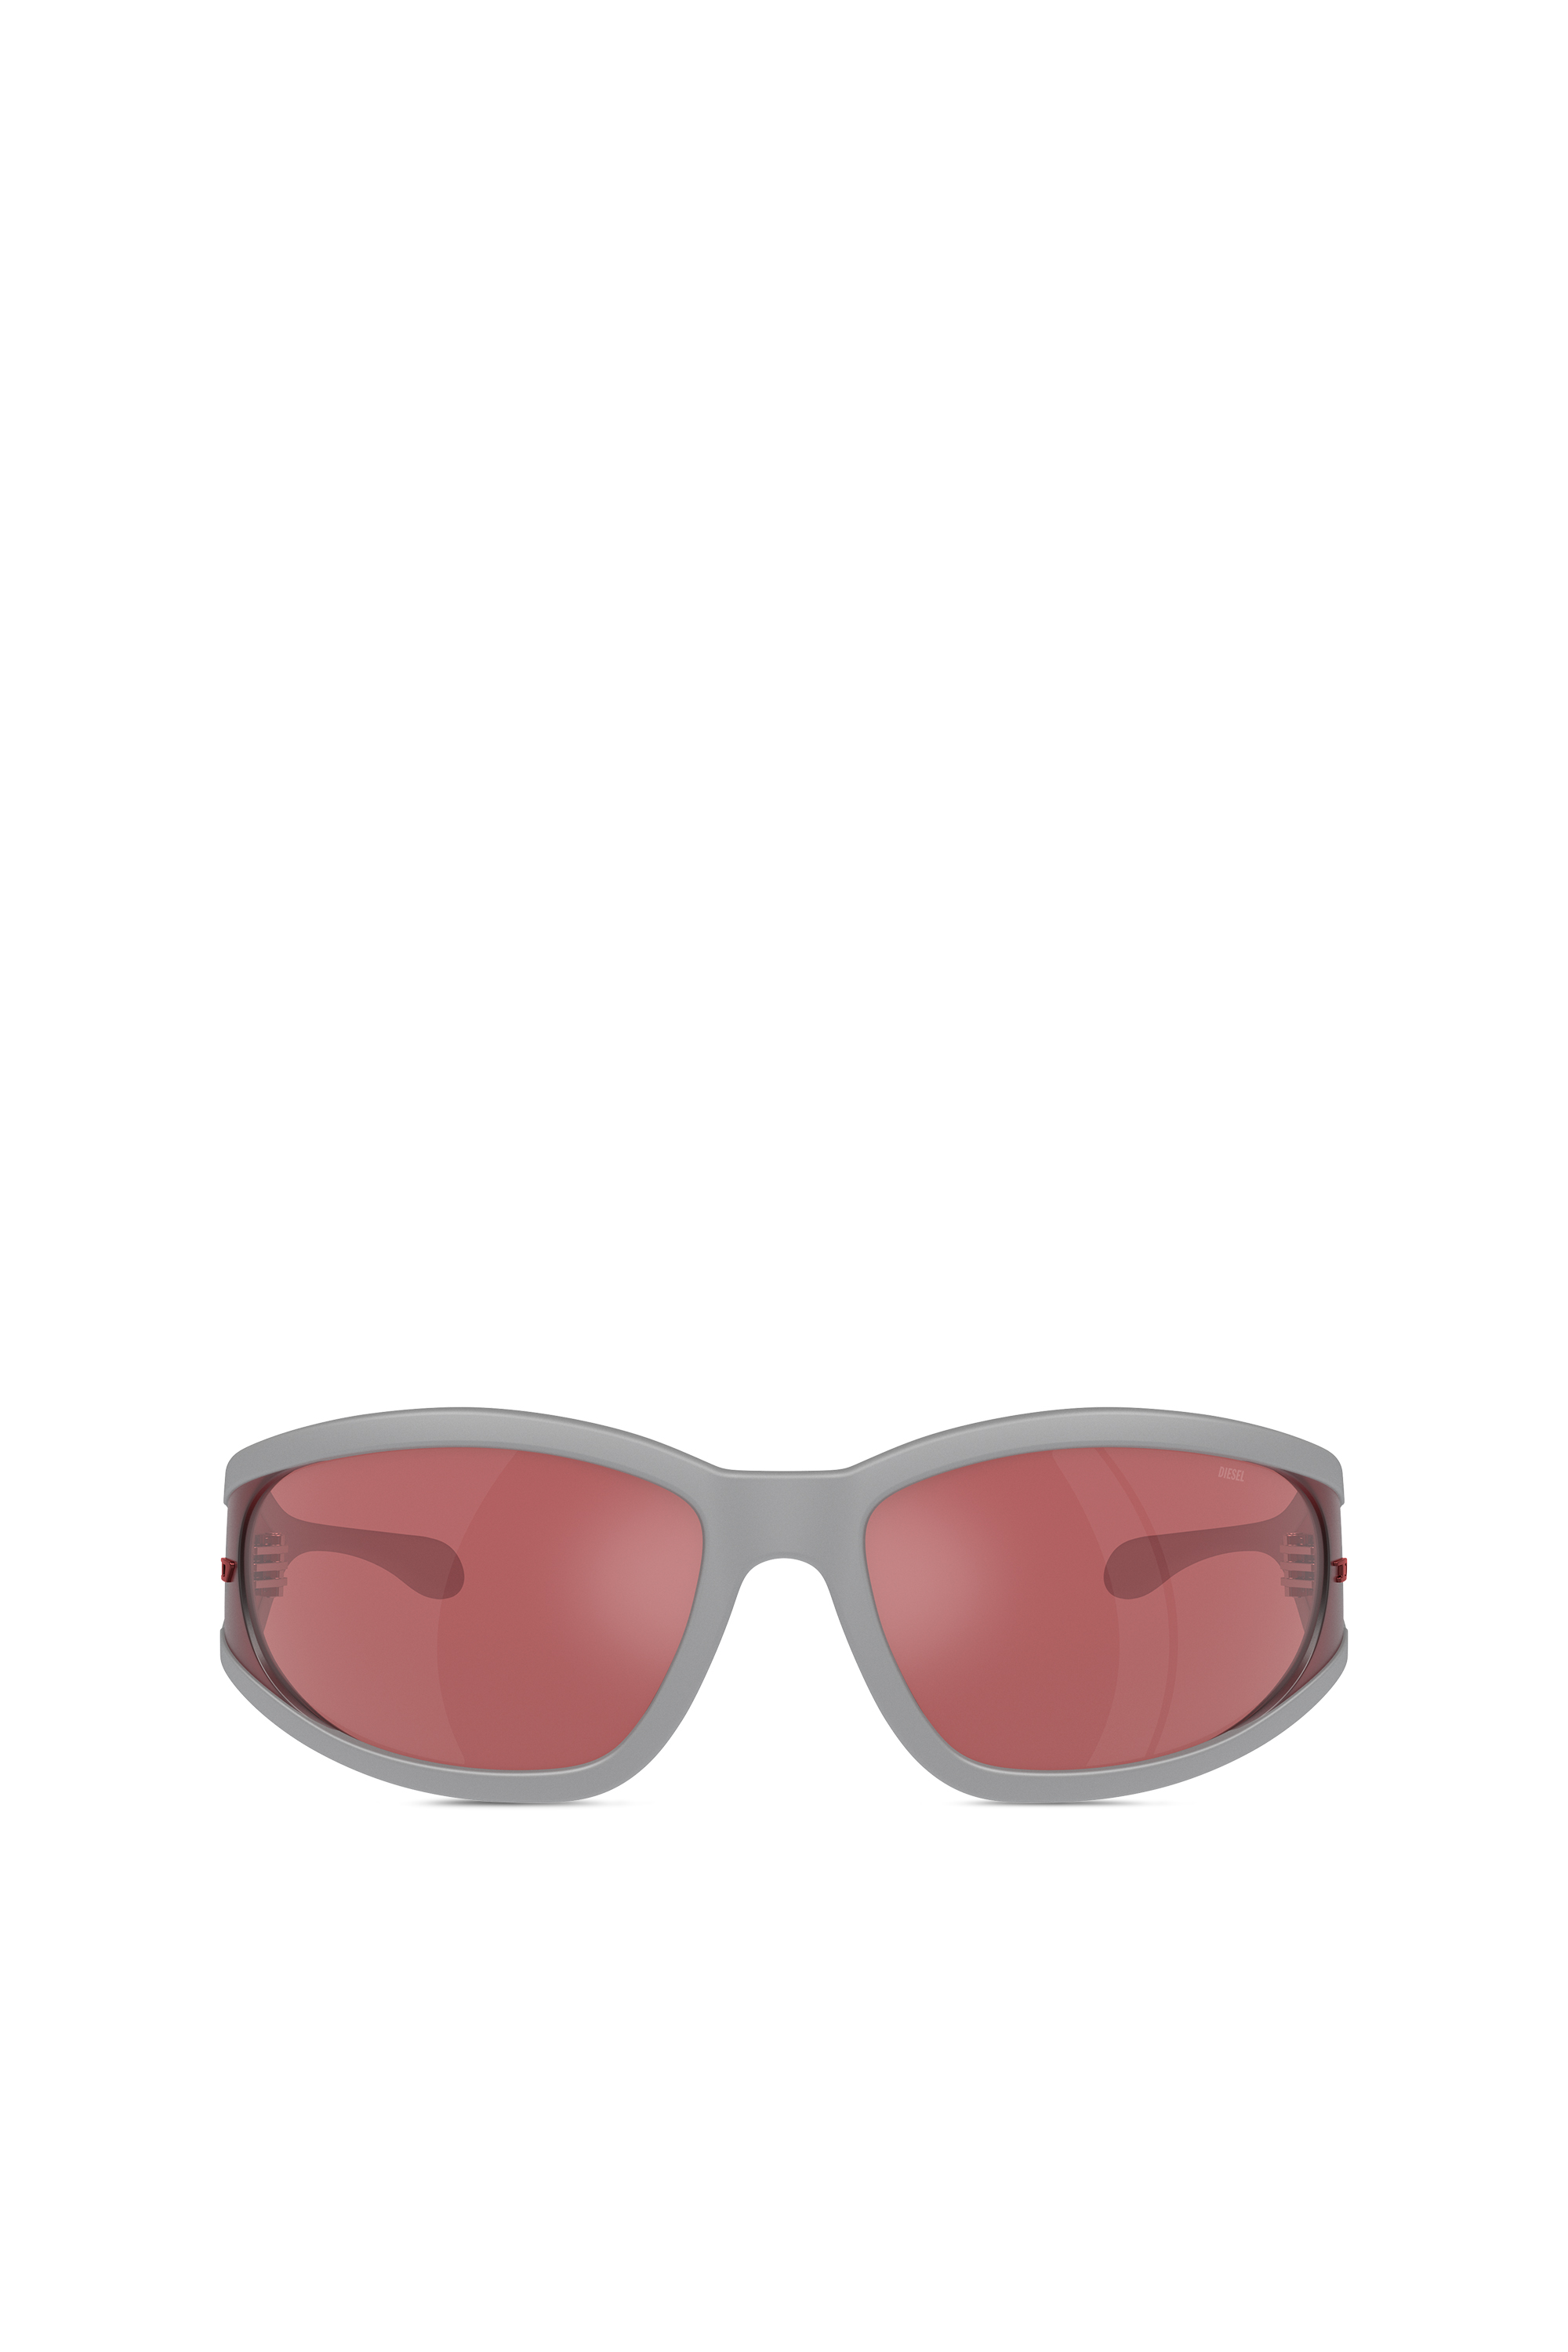 Diesel - Sonnenbrille aus acetat mit rechteckigen gläsern - Sonnenbrille - Unisex - Bunt